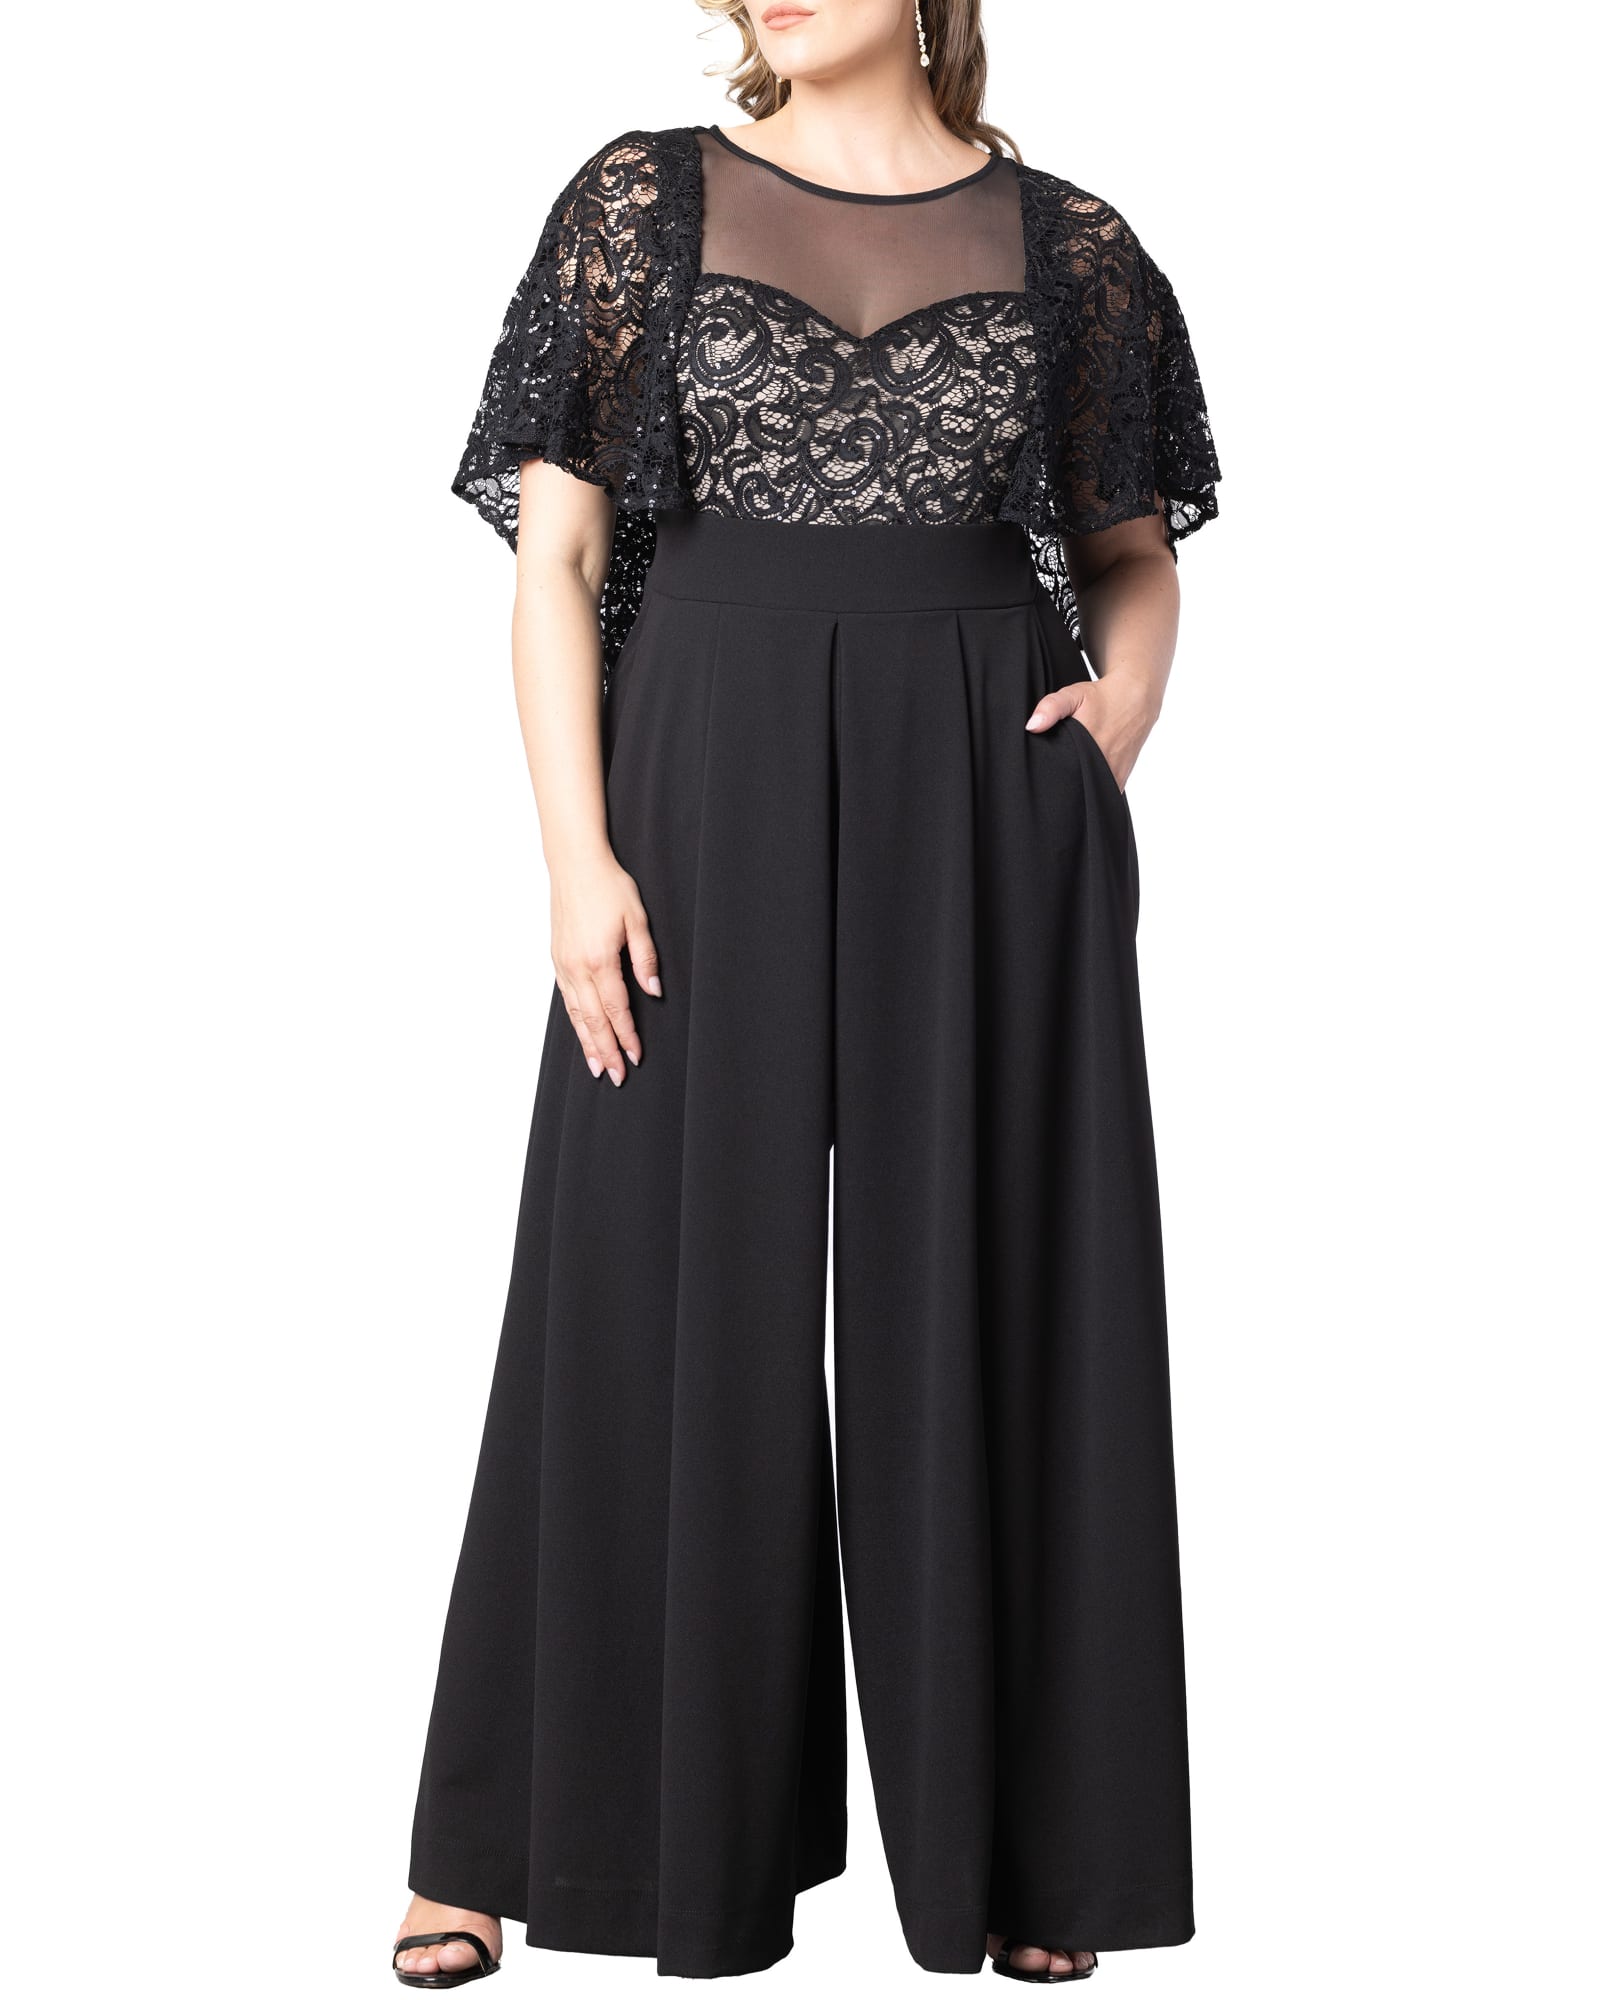 Plus-Sized Black Lace Jumpsuit